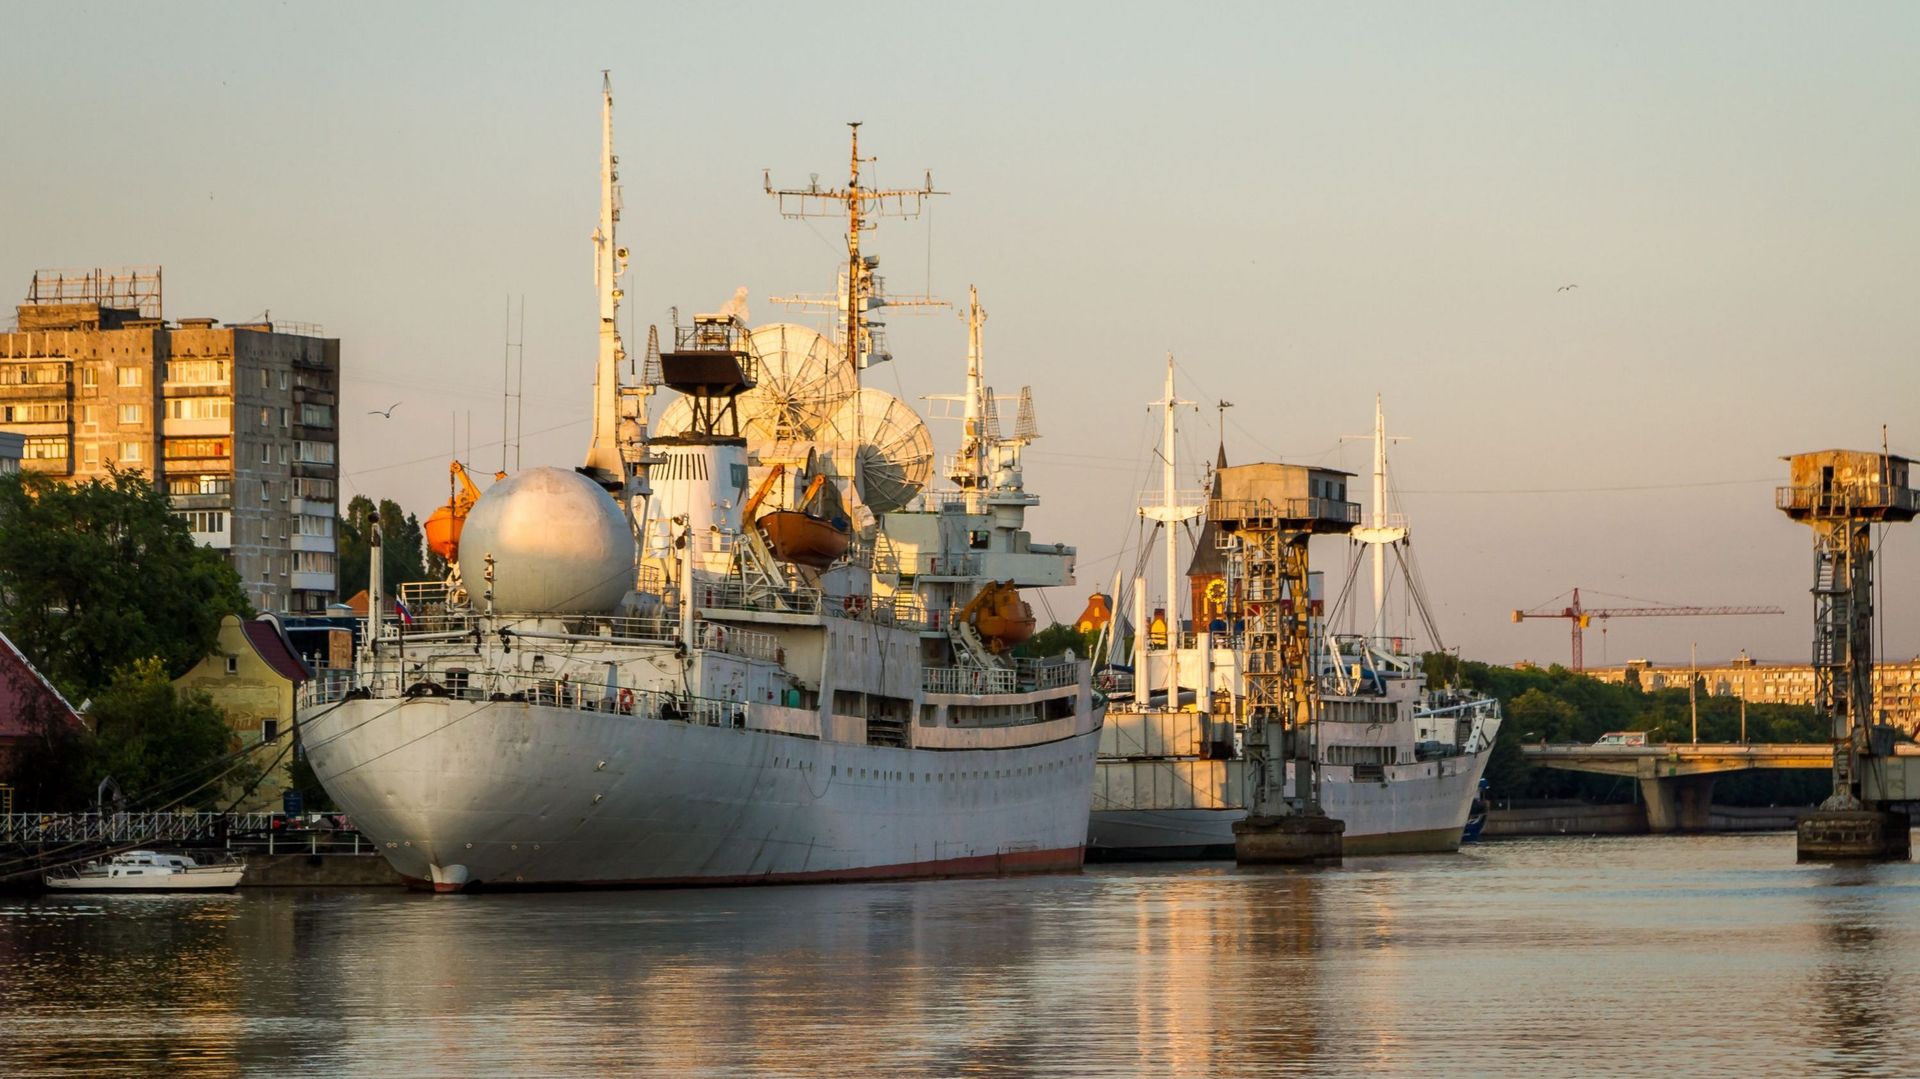 Bateaux de la flotte russe à Kaliningrad